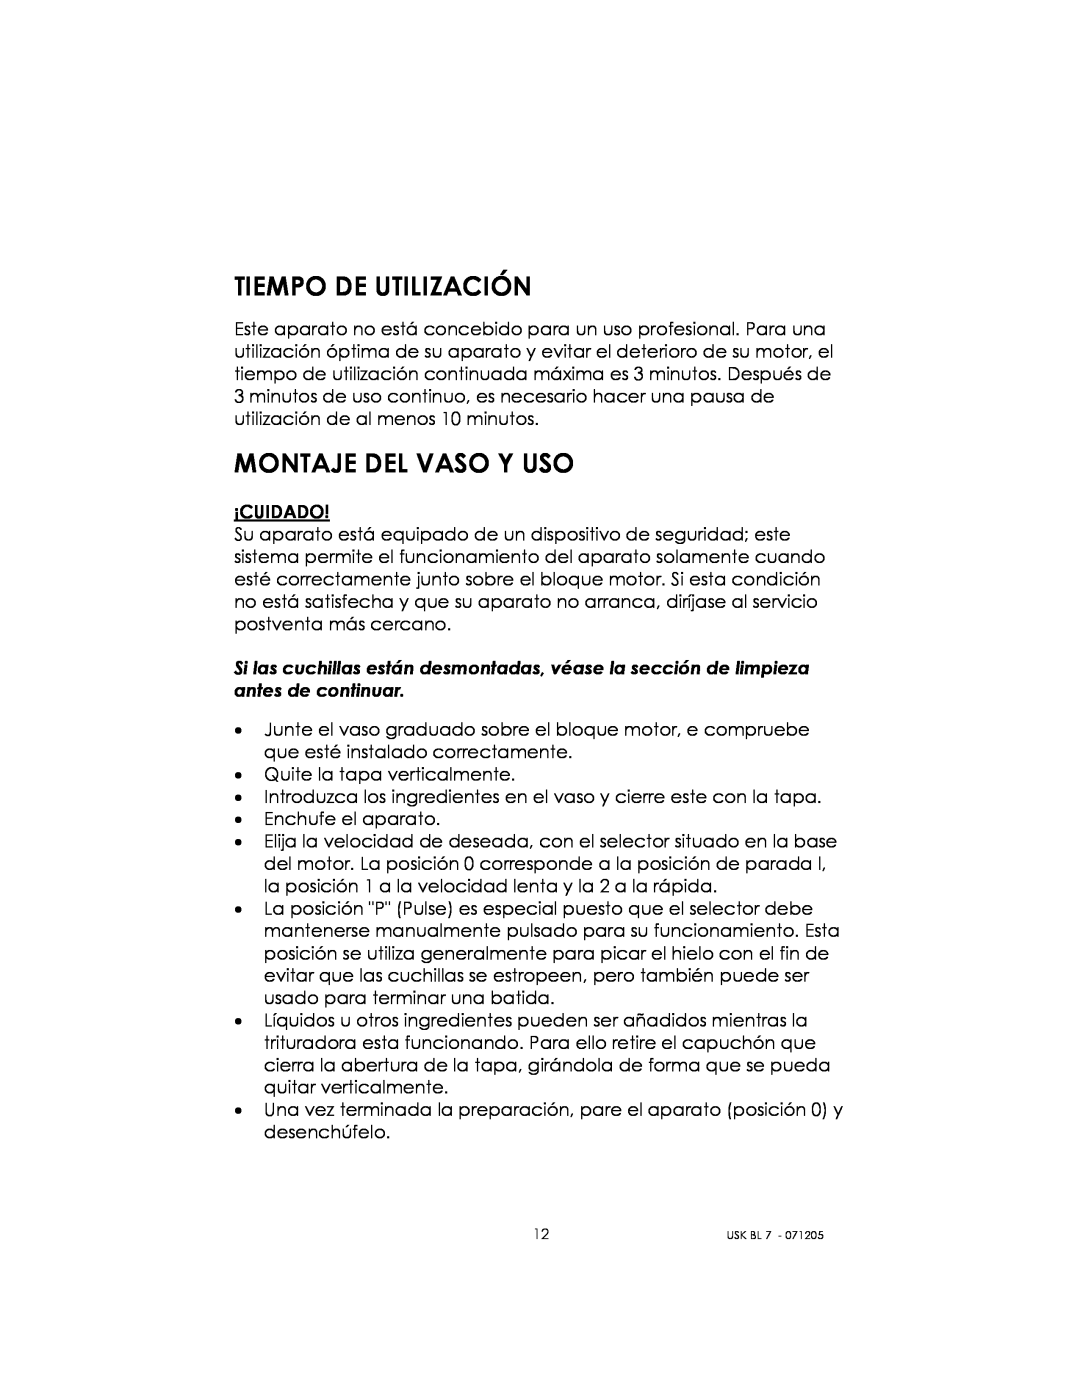 Kalorik USK BL 7 manual Tiempo De Utilización, Montaje Del Vaso Y Uso 